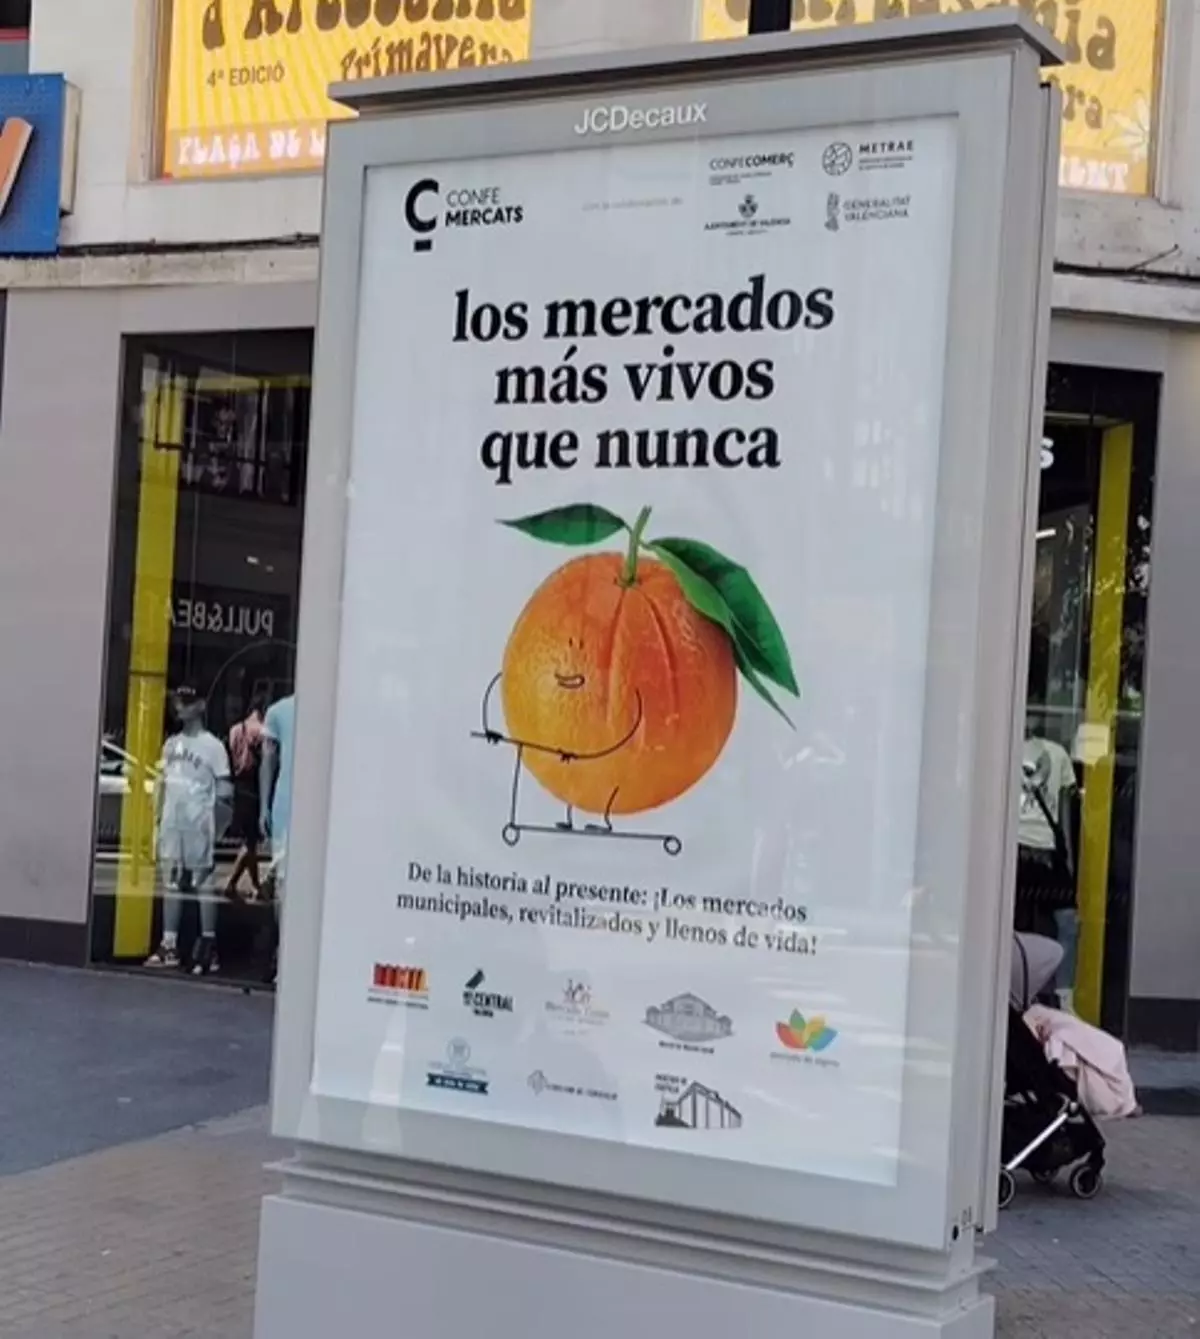 Los agricultores aplauden la publicidad positiva de la fruta sin "naranjas podridas"